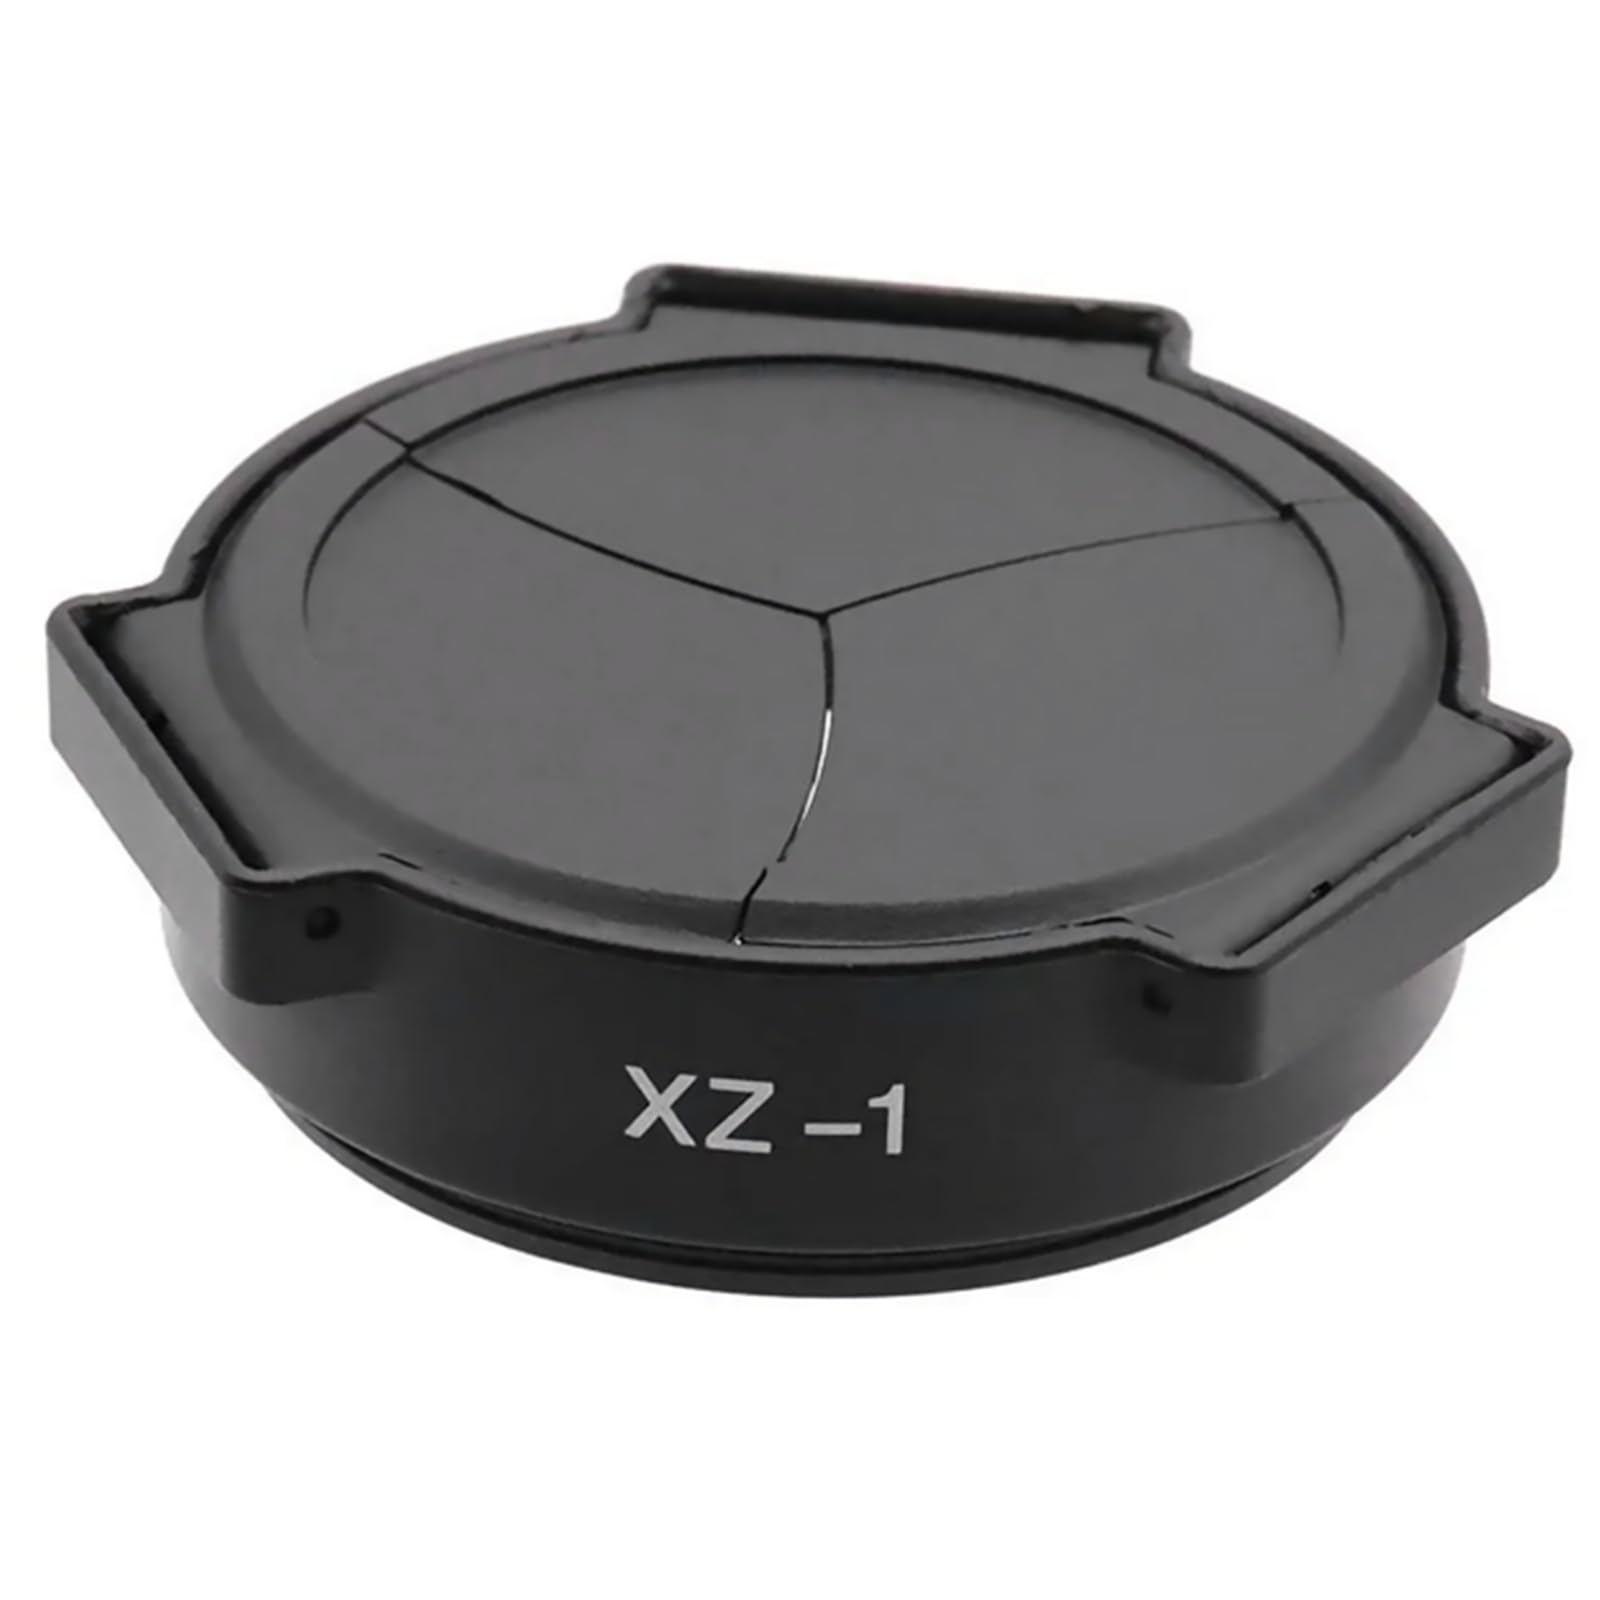 ZEZEFUFU Auto Objektivdeckel für Olympus XZ-1 Kamera, öffnet und schließt automatisch Kamera-Objektivdeckelabdeckung von ZEZEFUFU